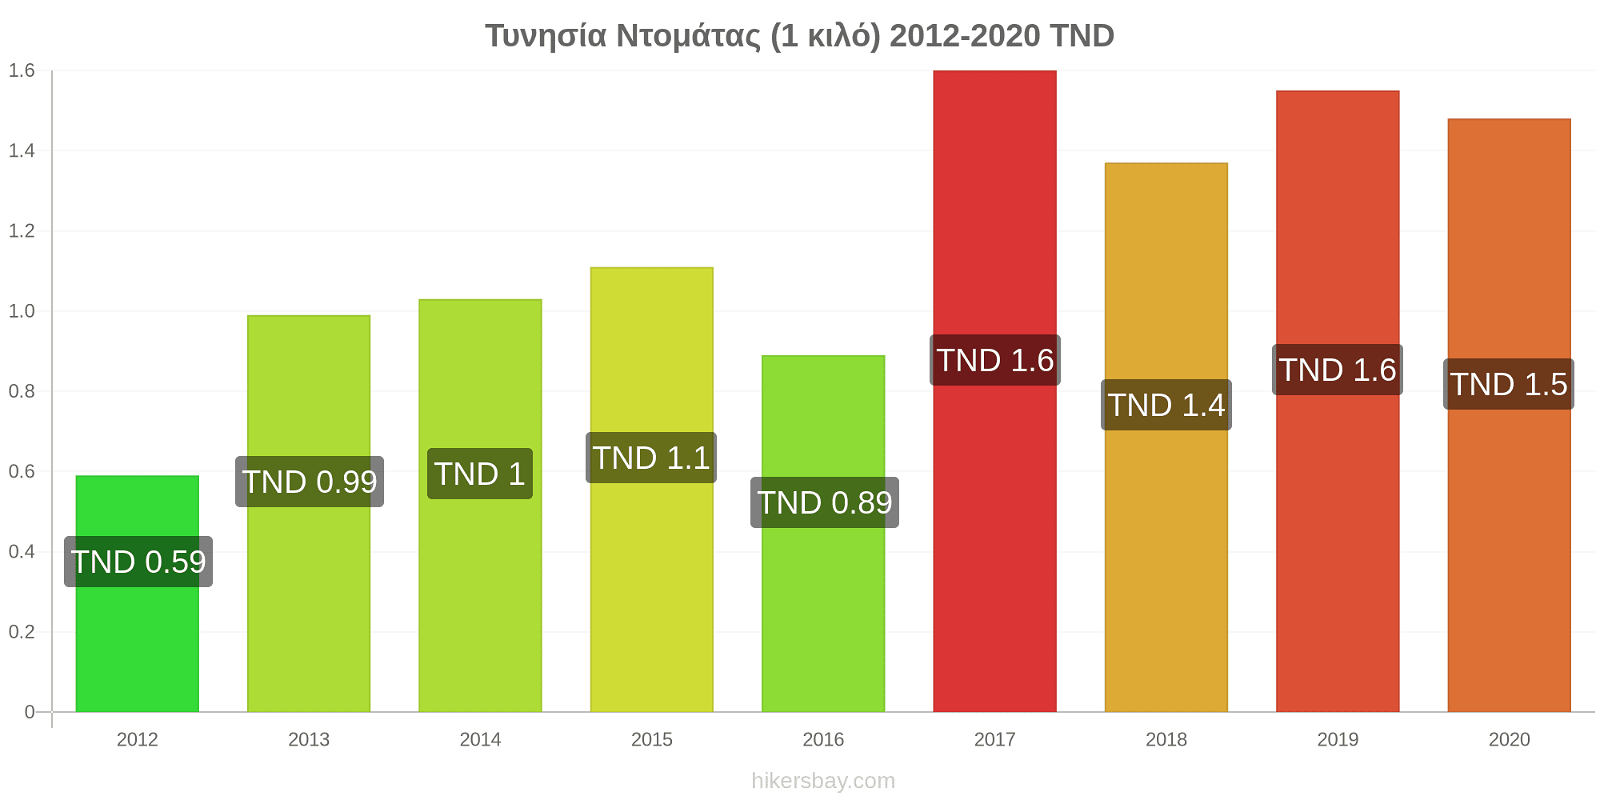 Τυνησία αλλαγές τιμών Ντομάτας (1 κιλό) hikersbay.com